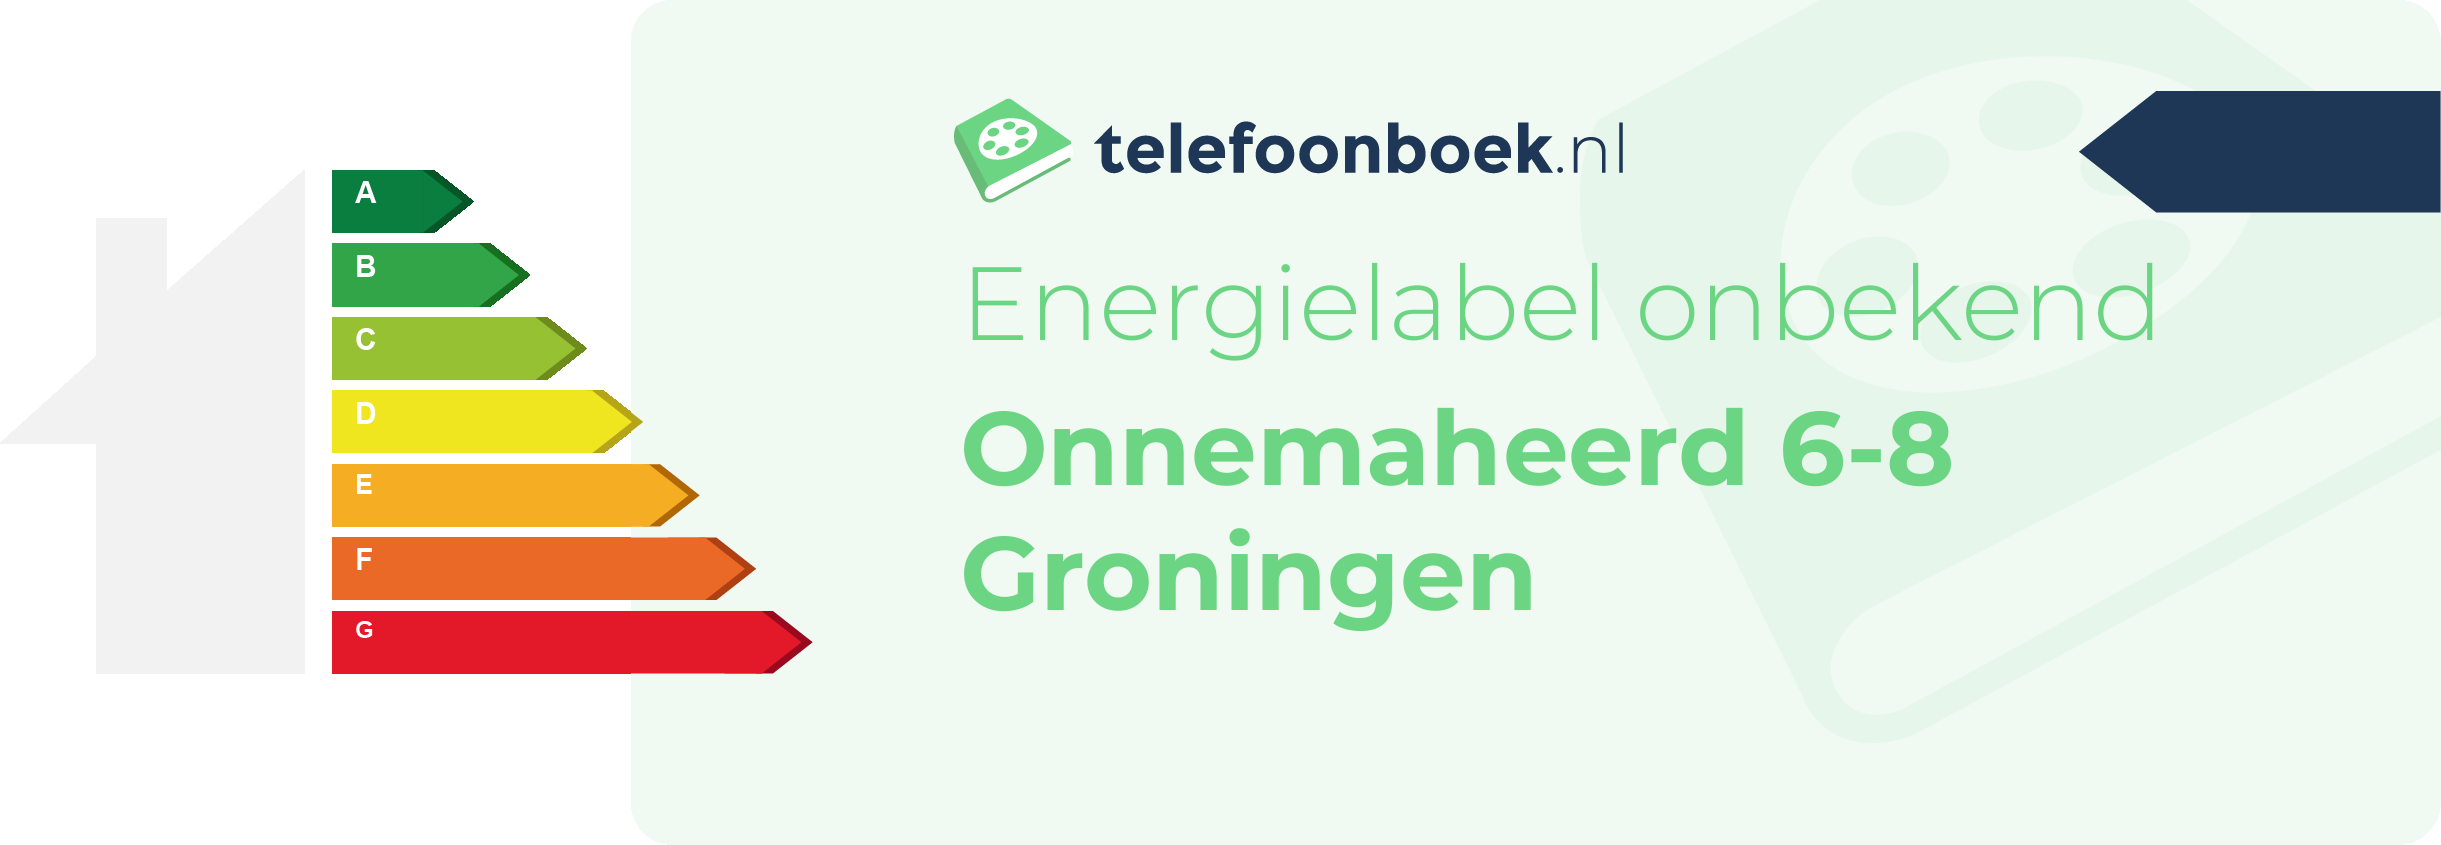 Energielabel Onnemaheerd 6-8 Groningen